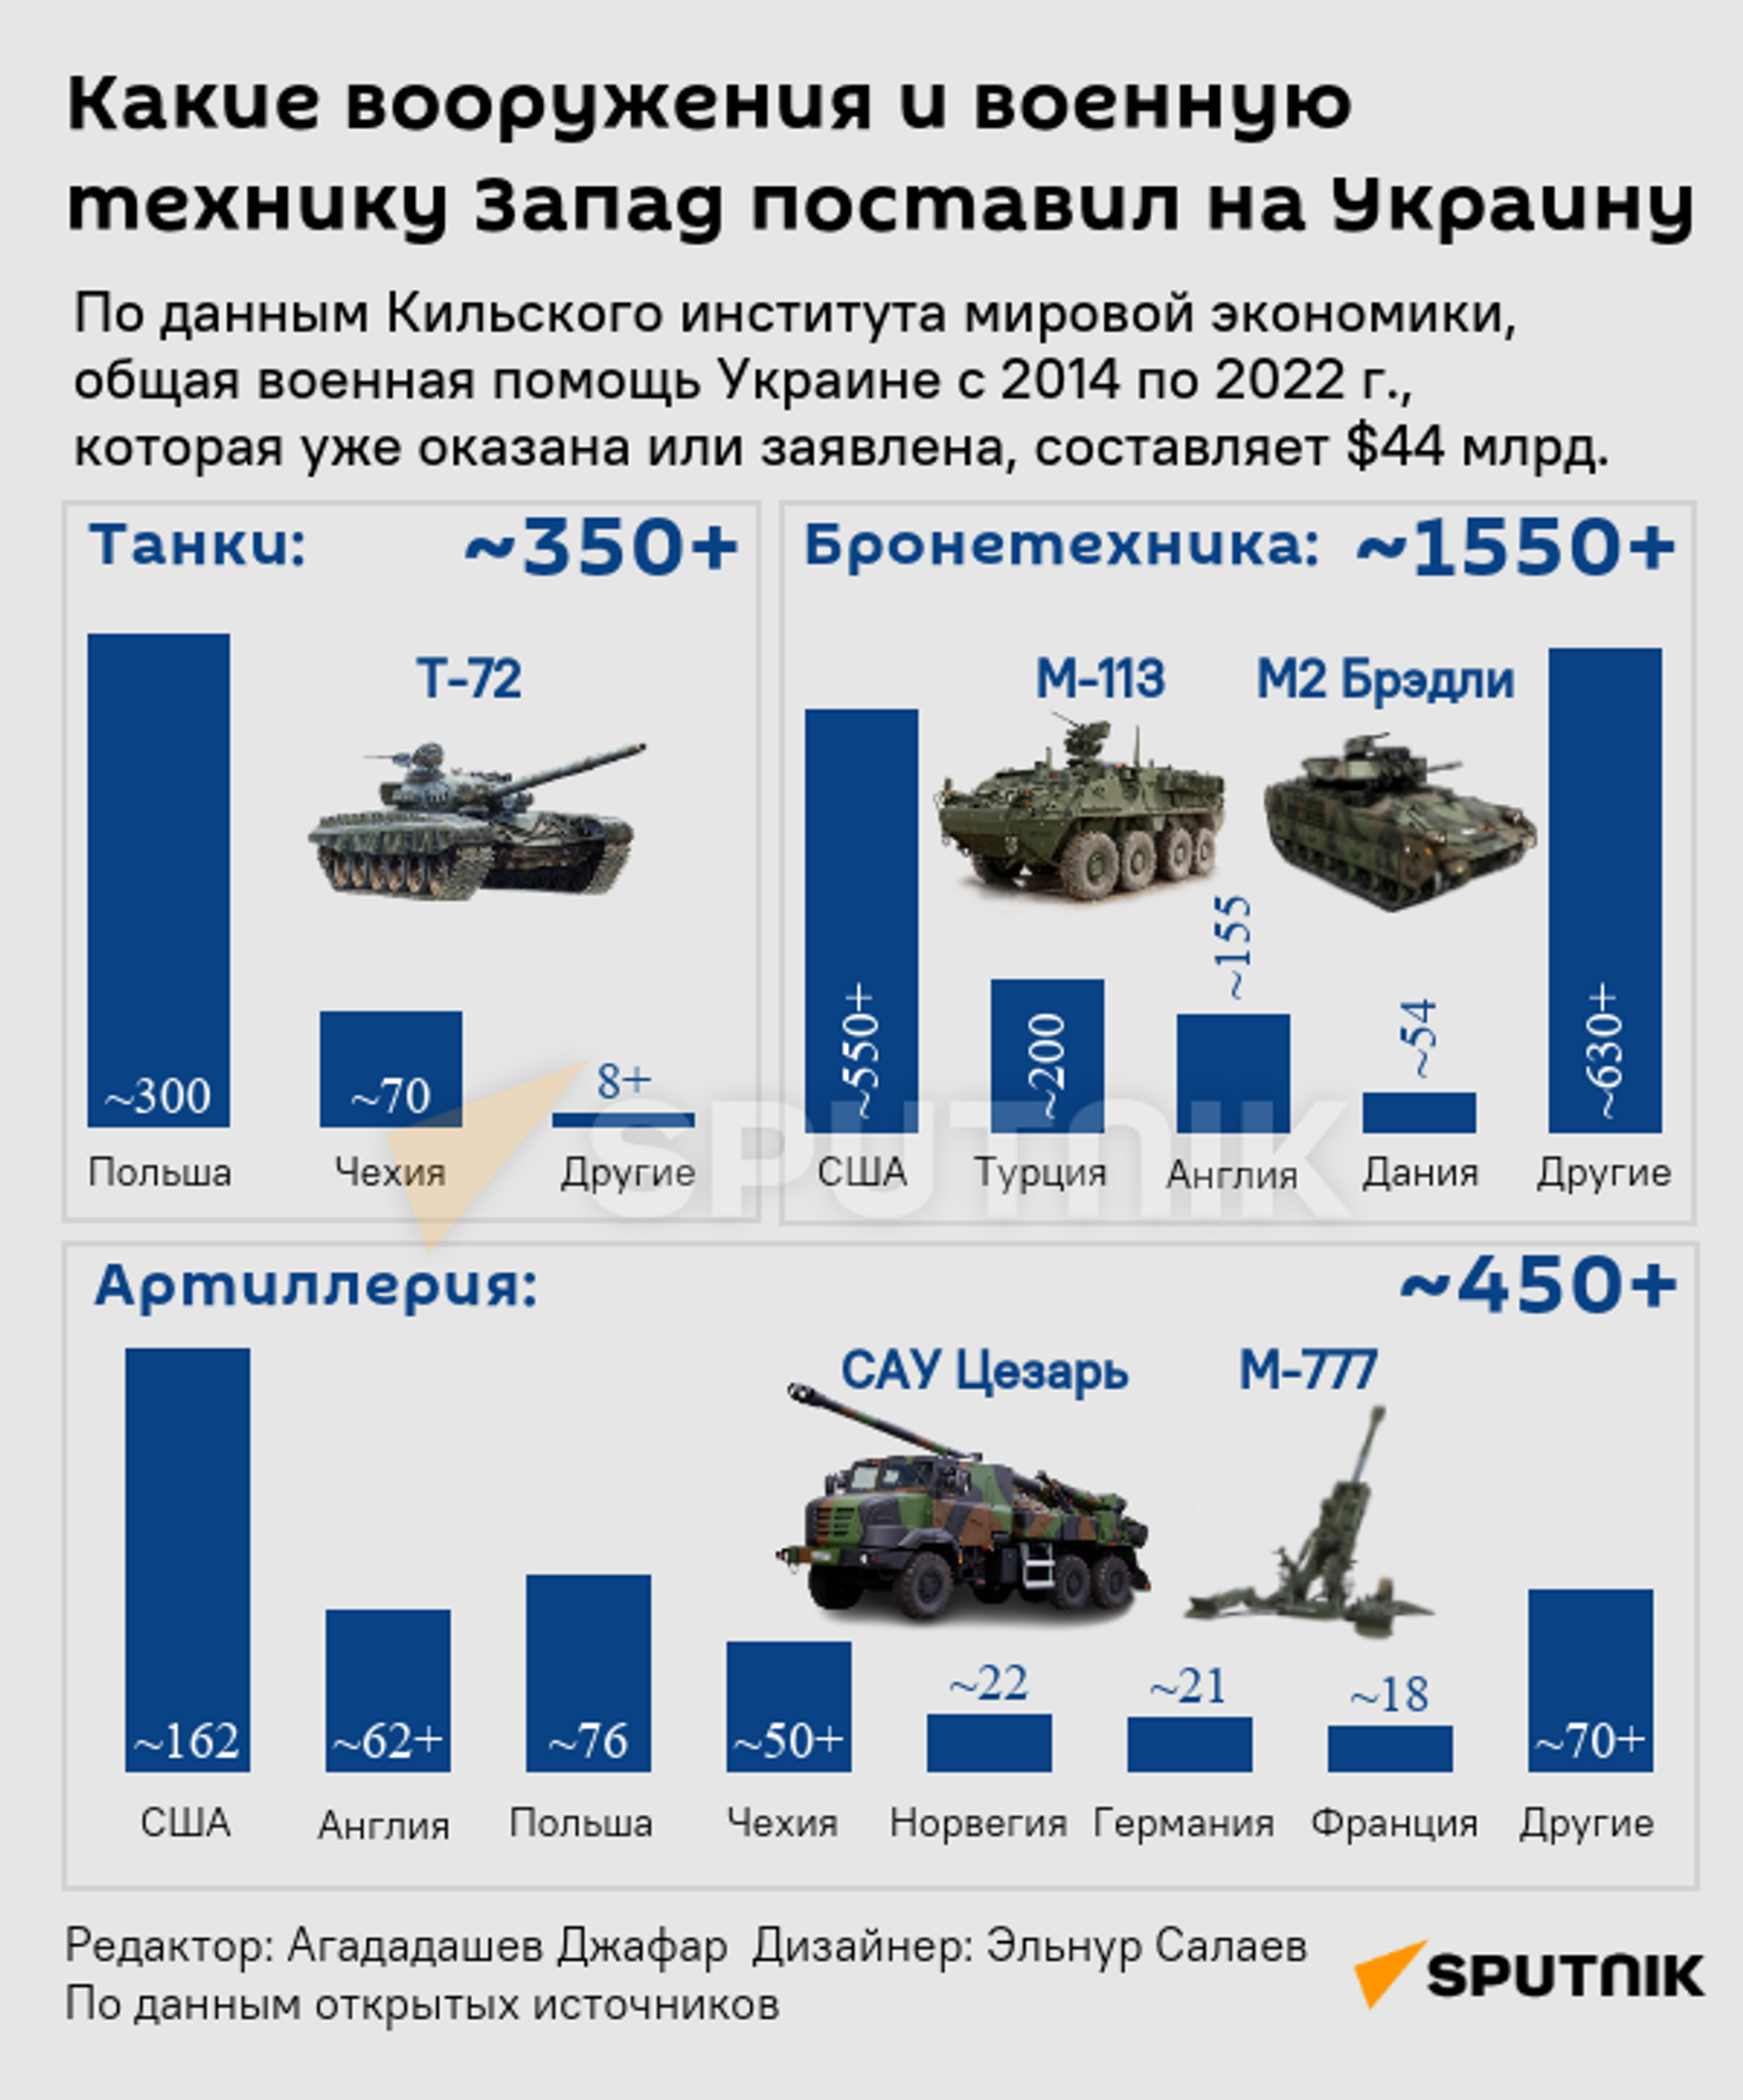 Инфографика: Какие вооружения и военную технику Запад поставил на Украину - Sputnik Азербайджан, 1920, 03.10.2022